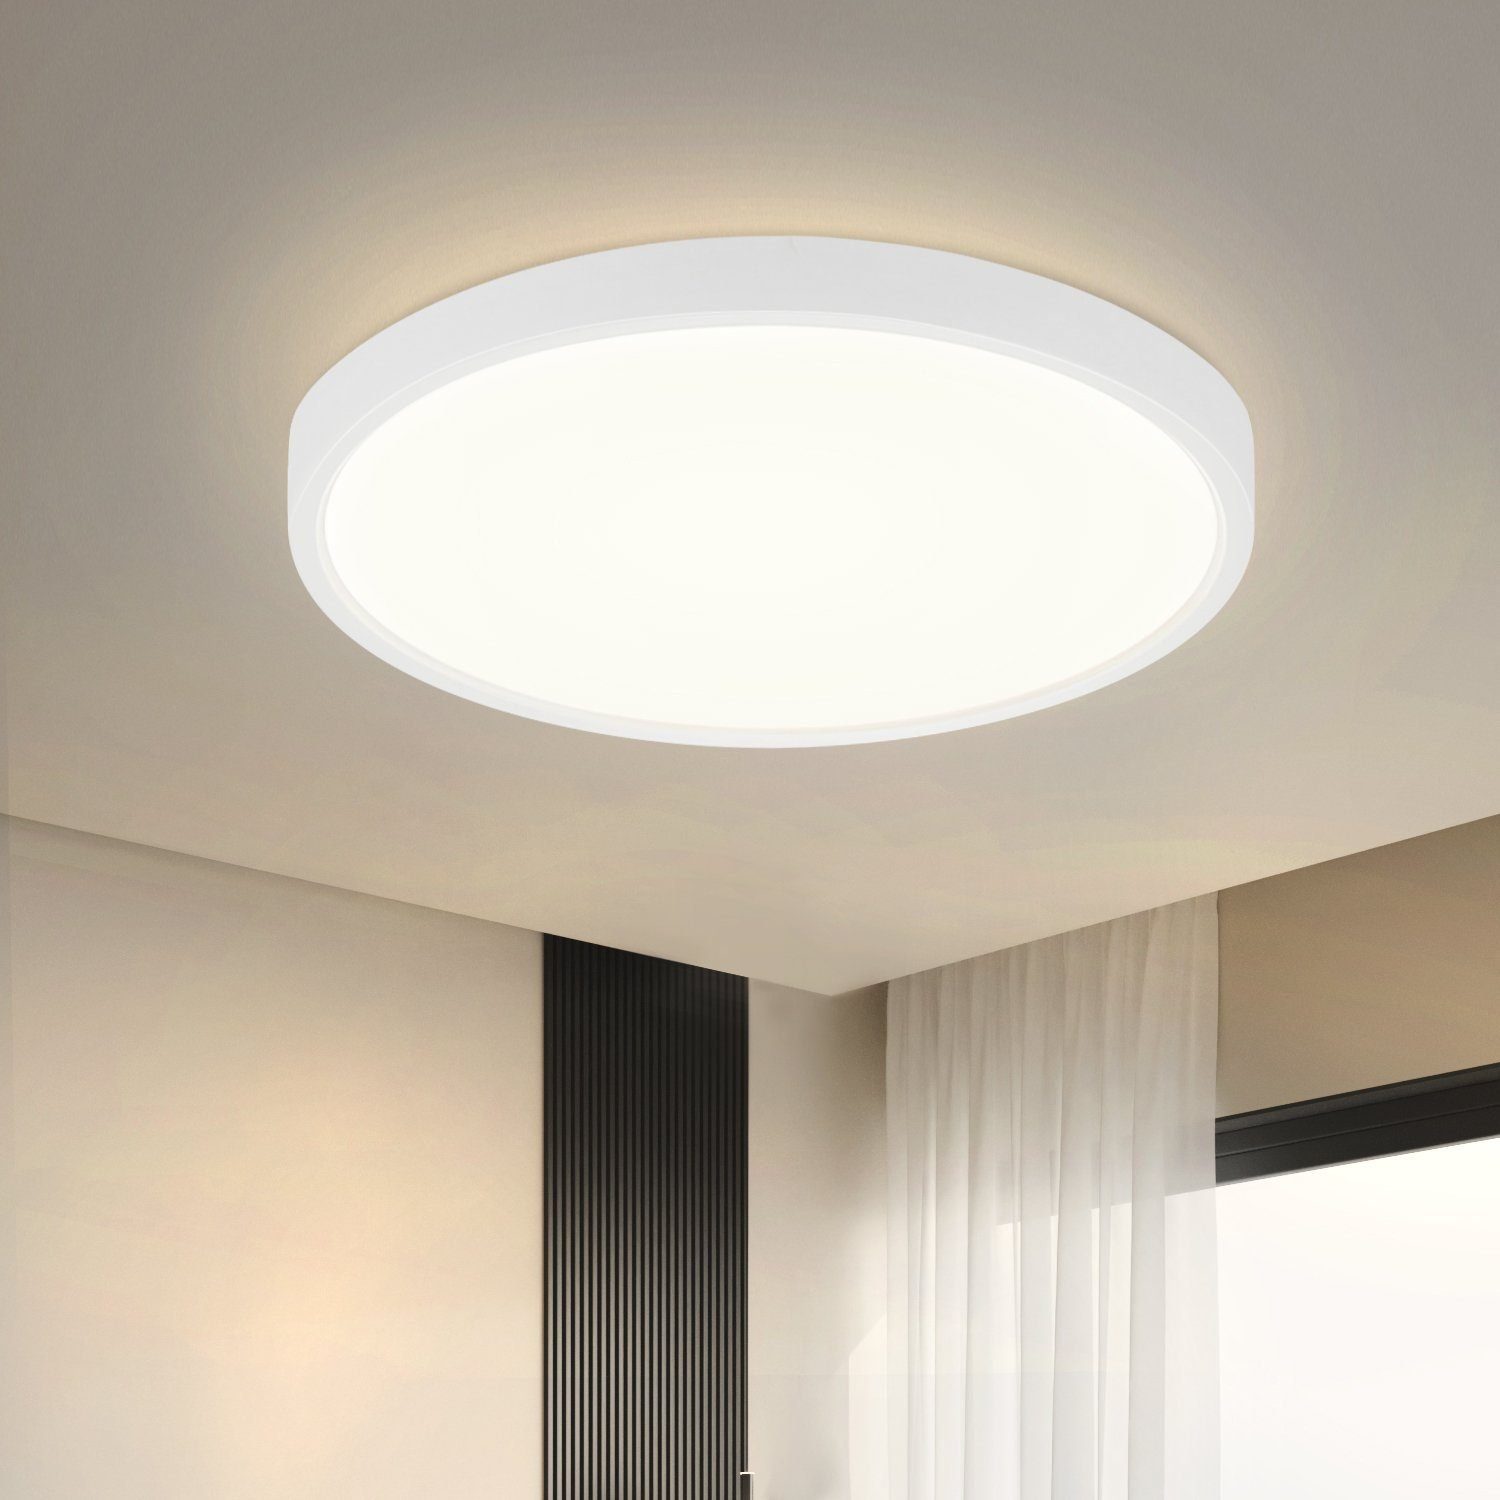 ZMH LED Deckenleuchte ∅22cm IP44 Wasserdicht 15W Selbstmontage Schlafzimmer, LED fest integriert, Neutralweiß, Badezimmer Deckenbeleuchtung Badezimmerlampe 4000K, Weiß